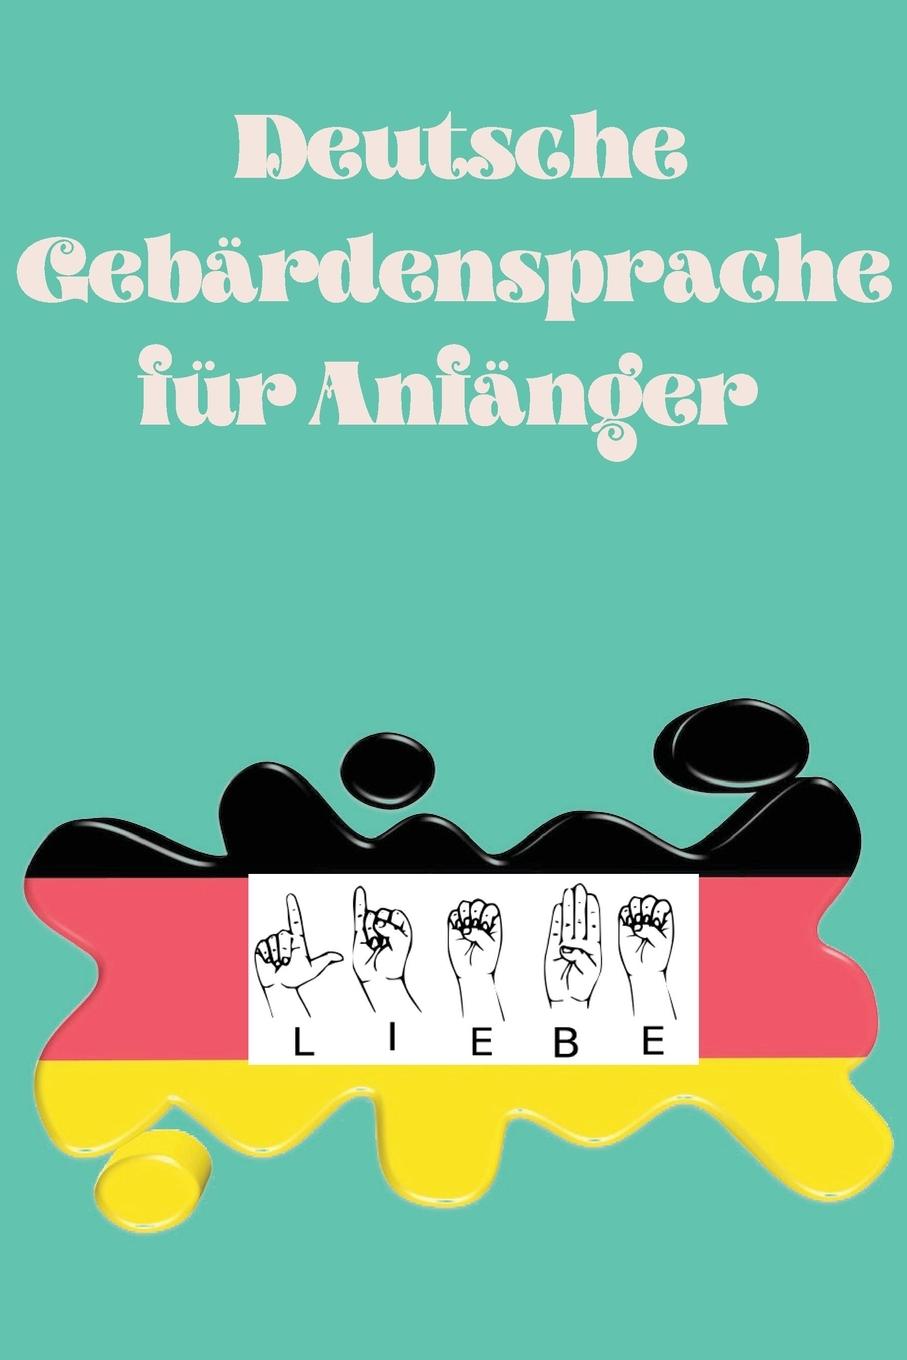 Carte Deutsche Gebardensprache fur Anfanger.Lernbuch, geeignet fur Kinder, Jugendliche und Erwachsene. Enthalt das Alphabet. 